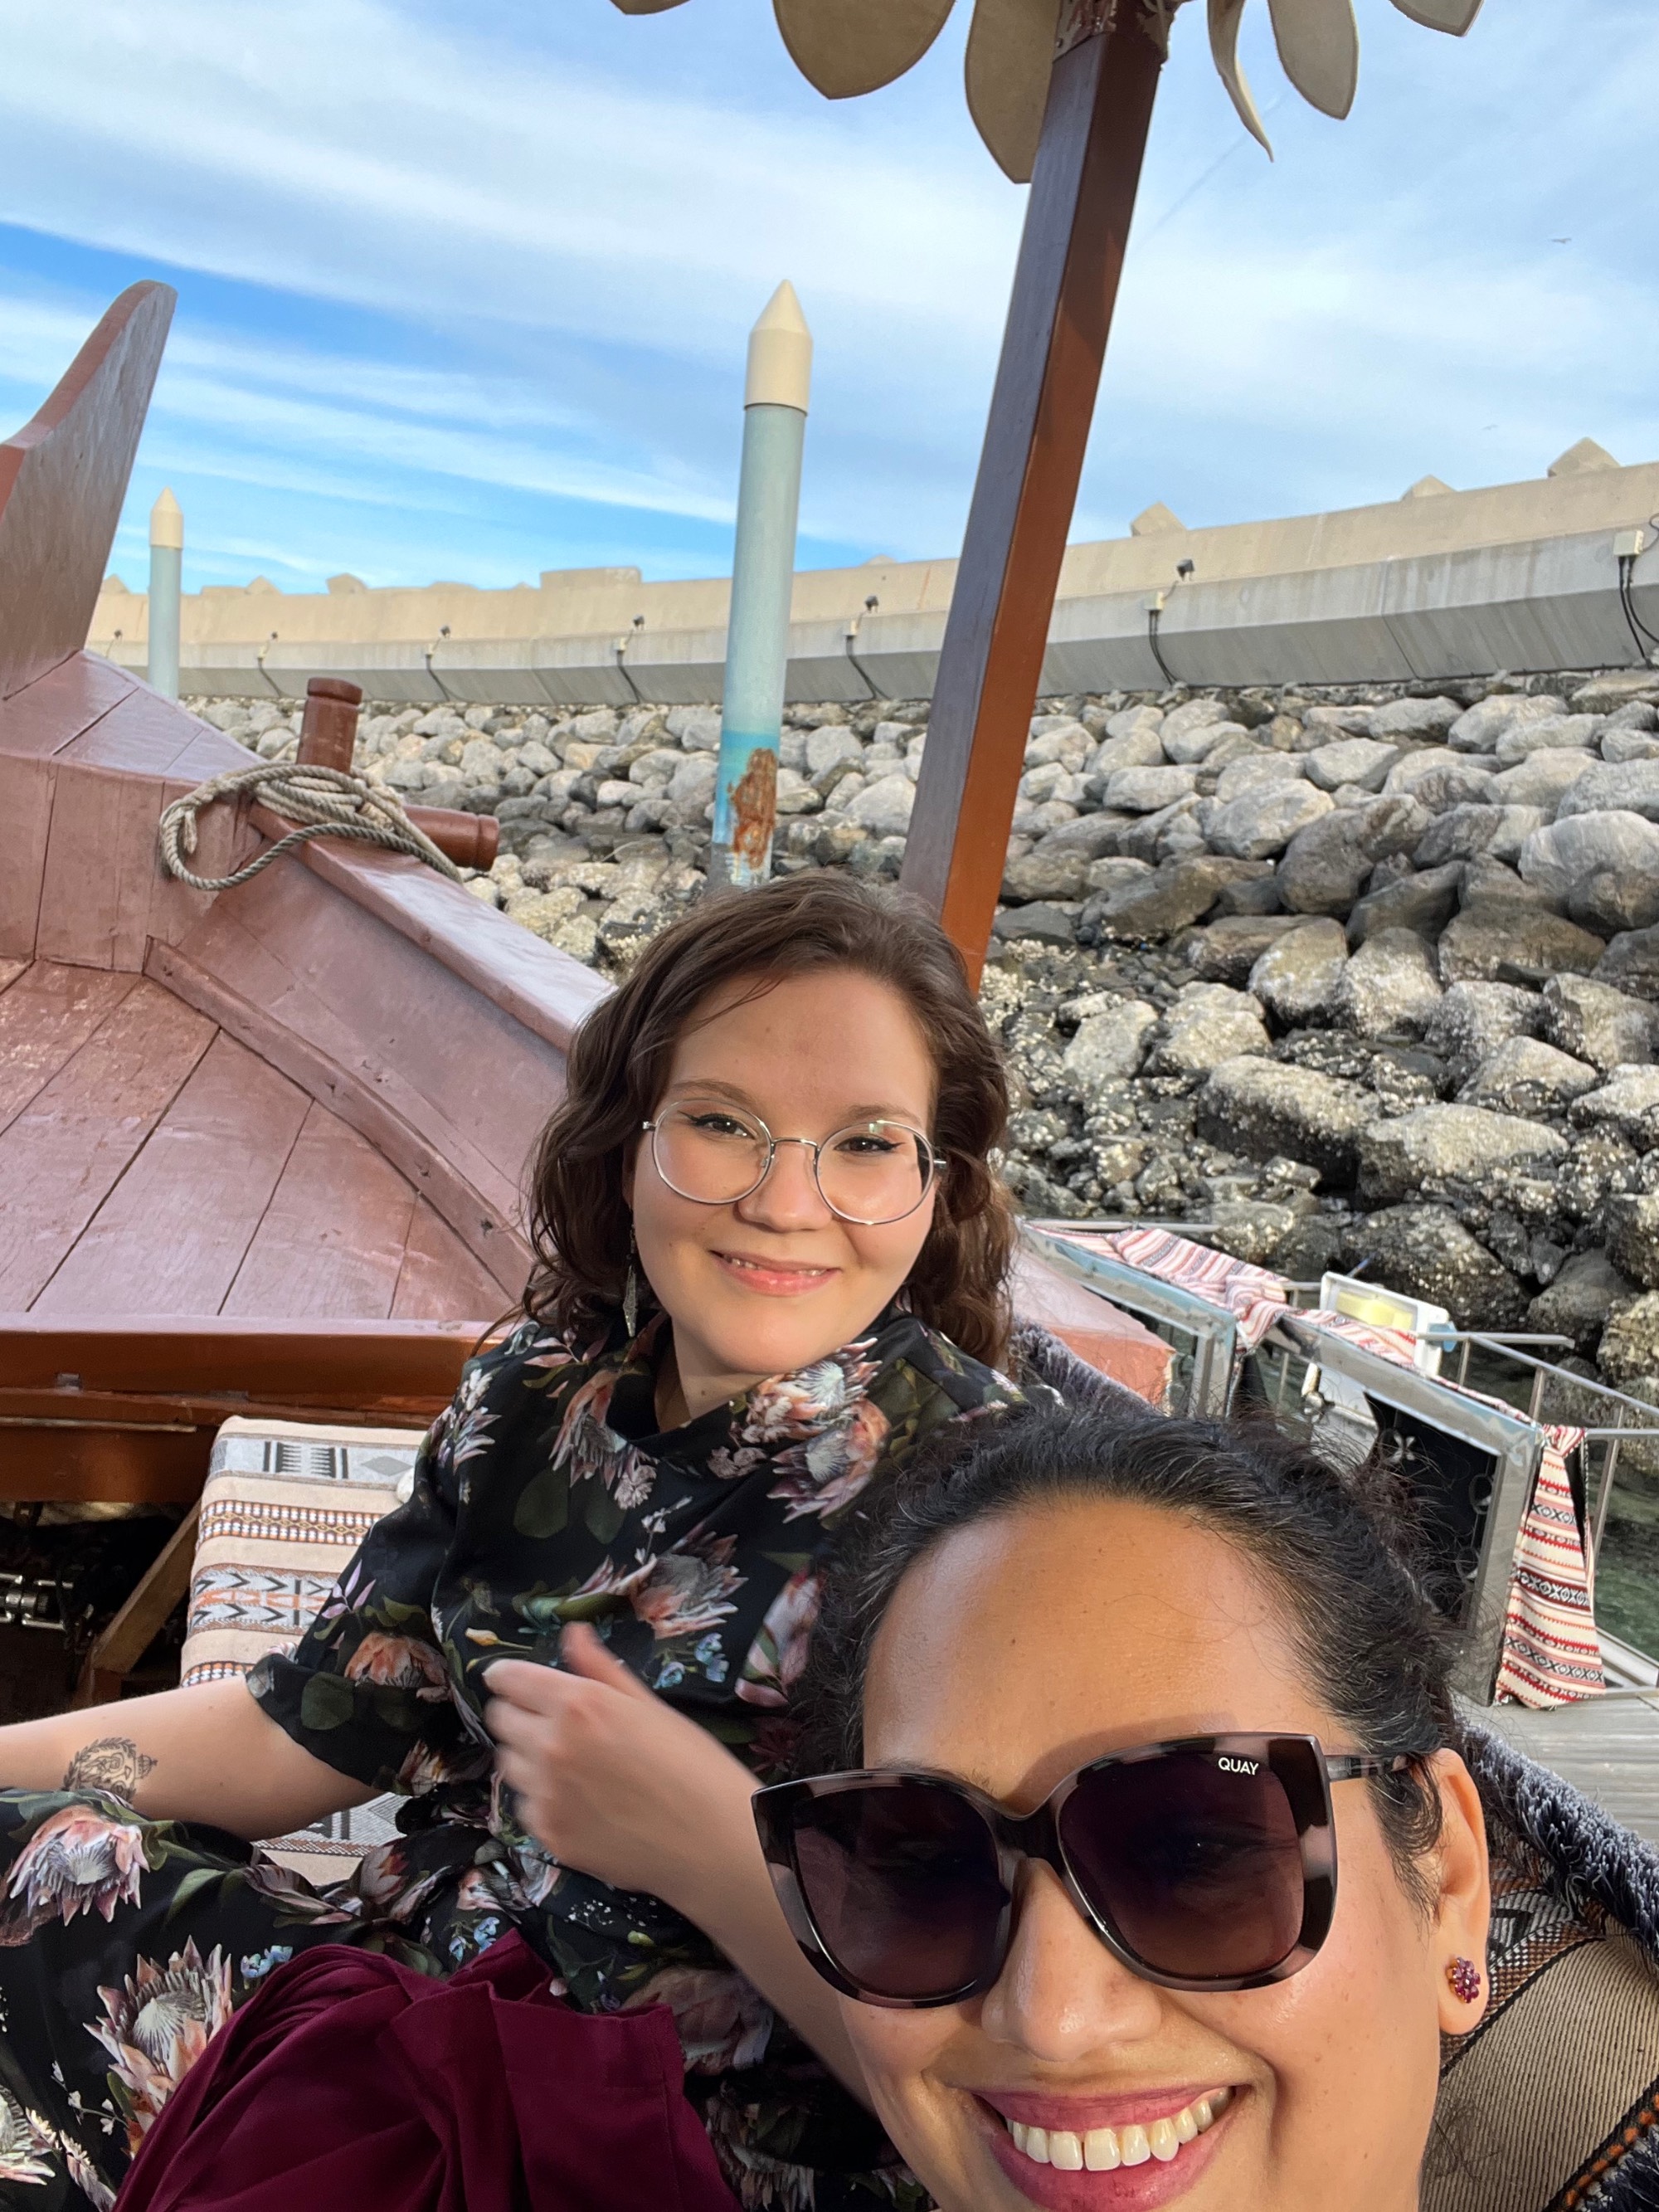 Selfie of two women on a boat